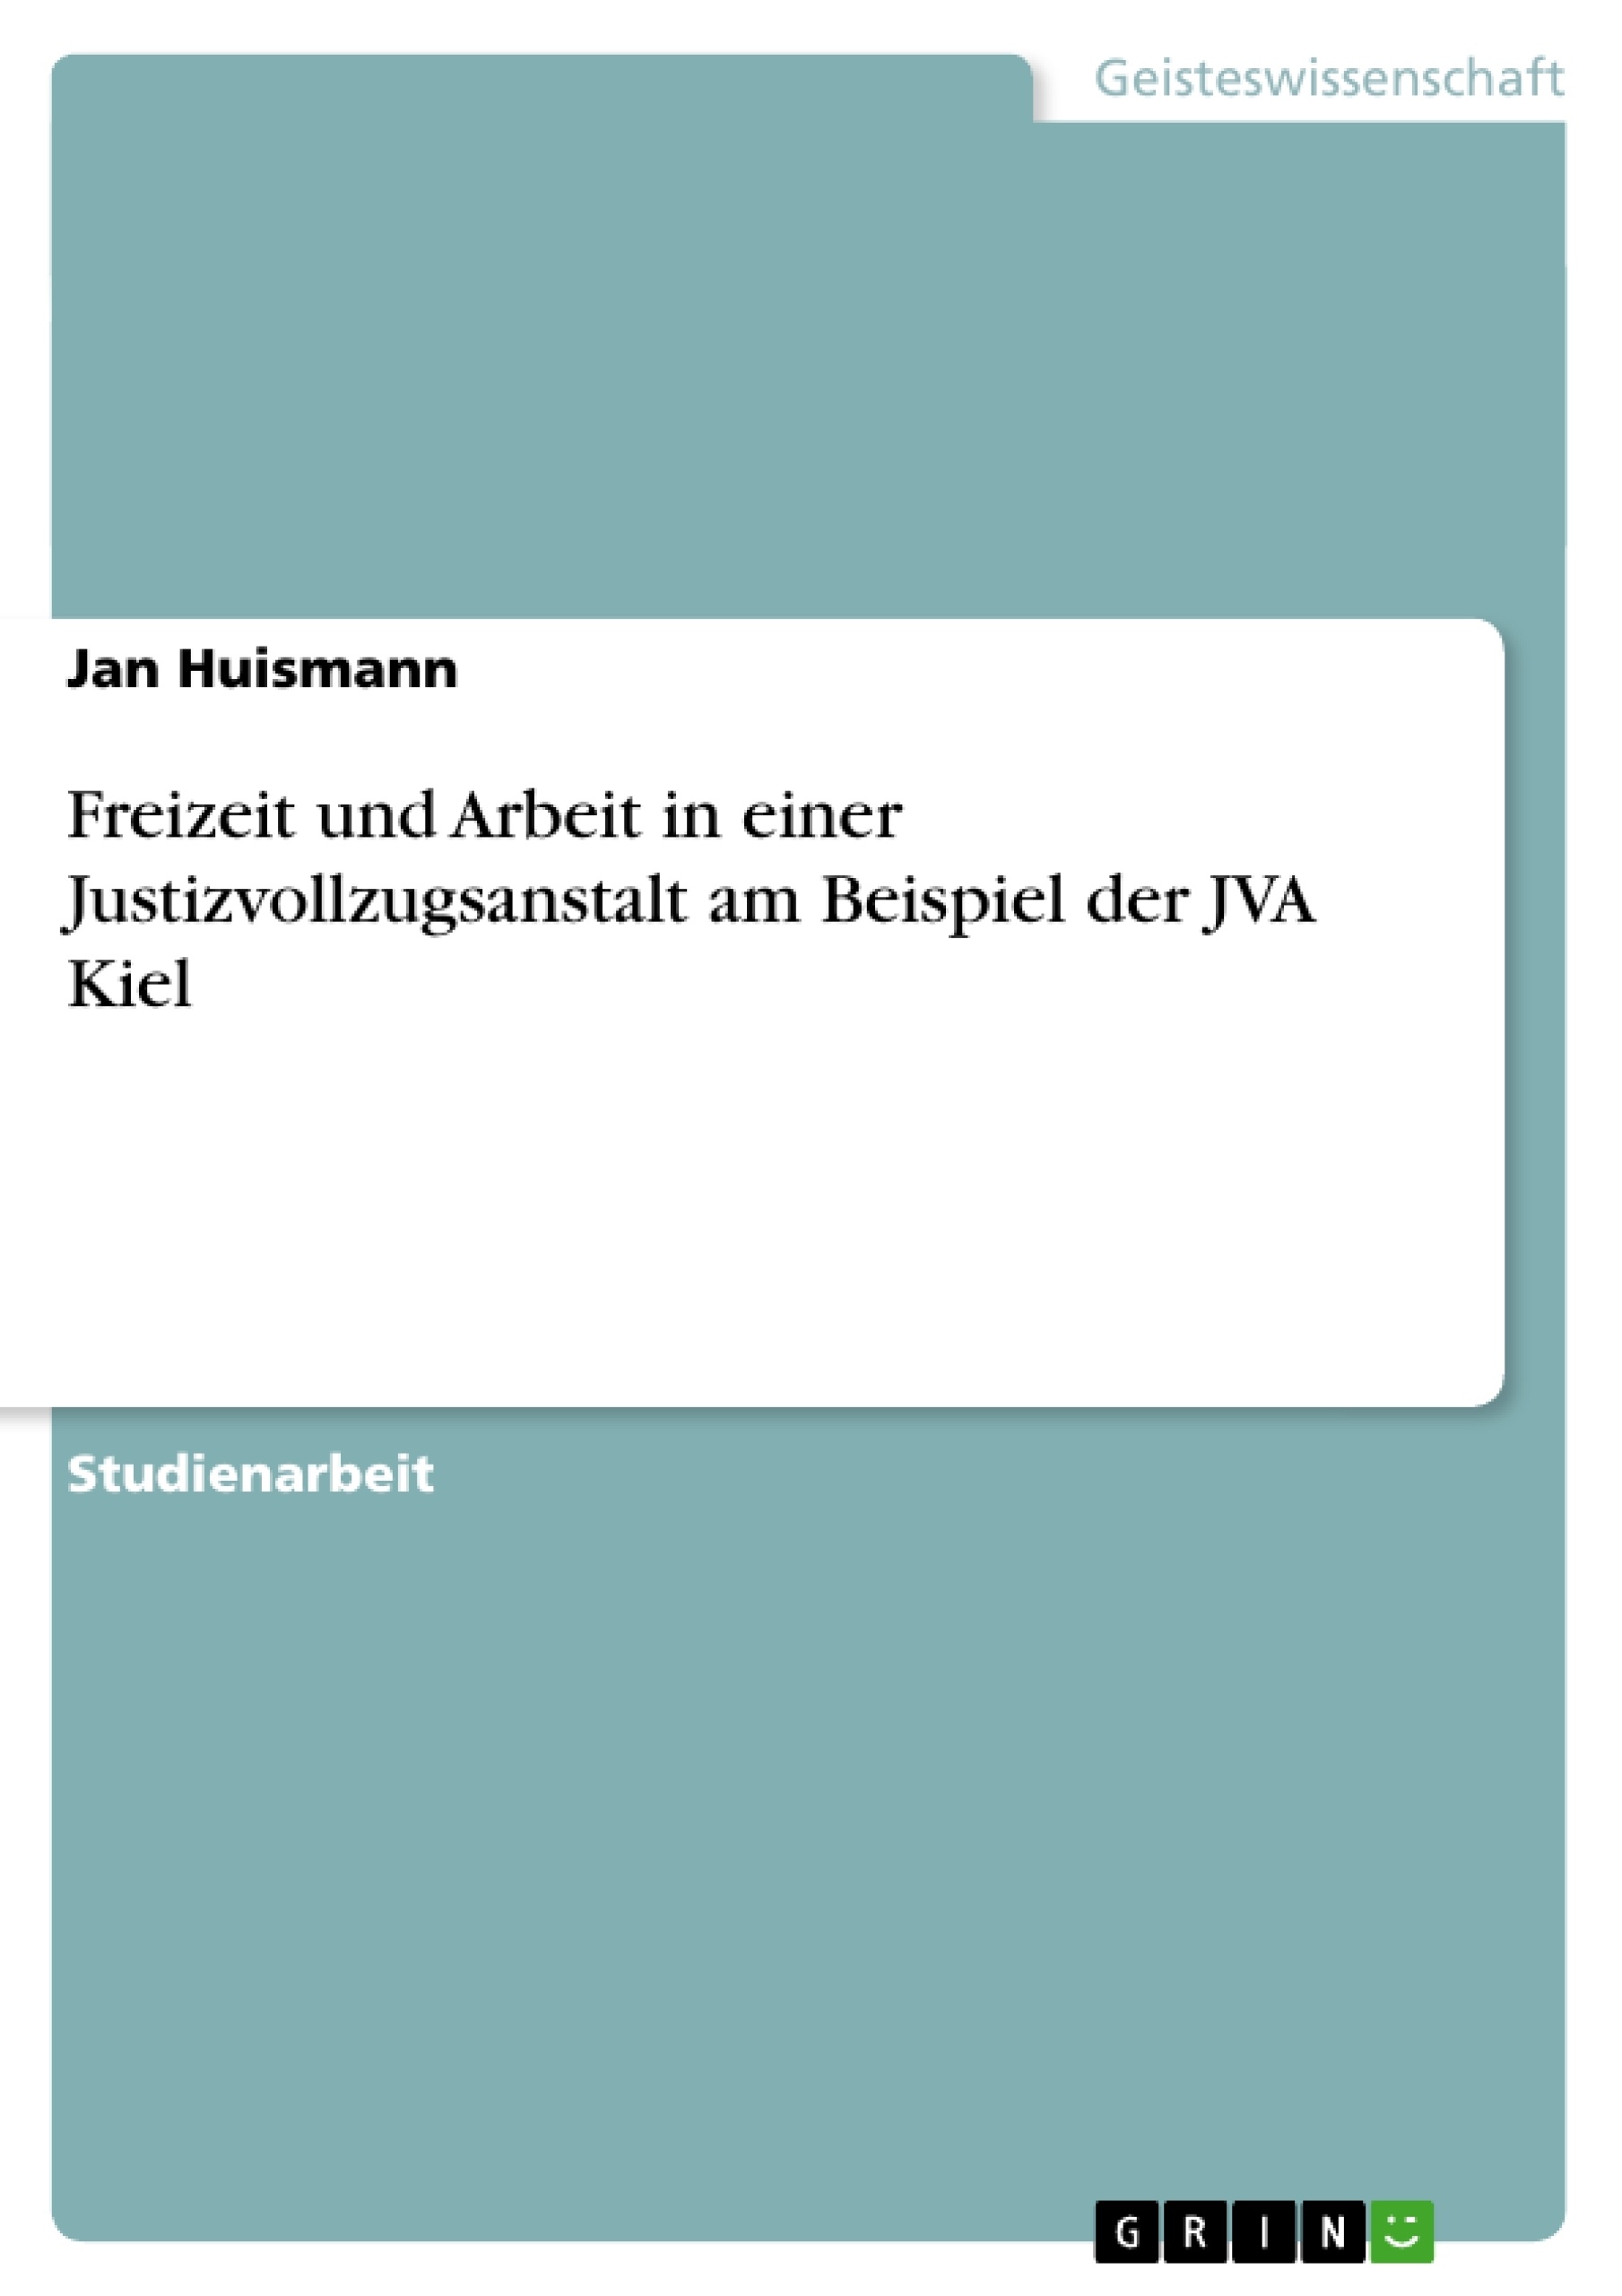 Title: Freizeit und Arbeit in einer Justizvollzugsanstalt am Beispiel der JVA Kiel